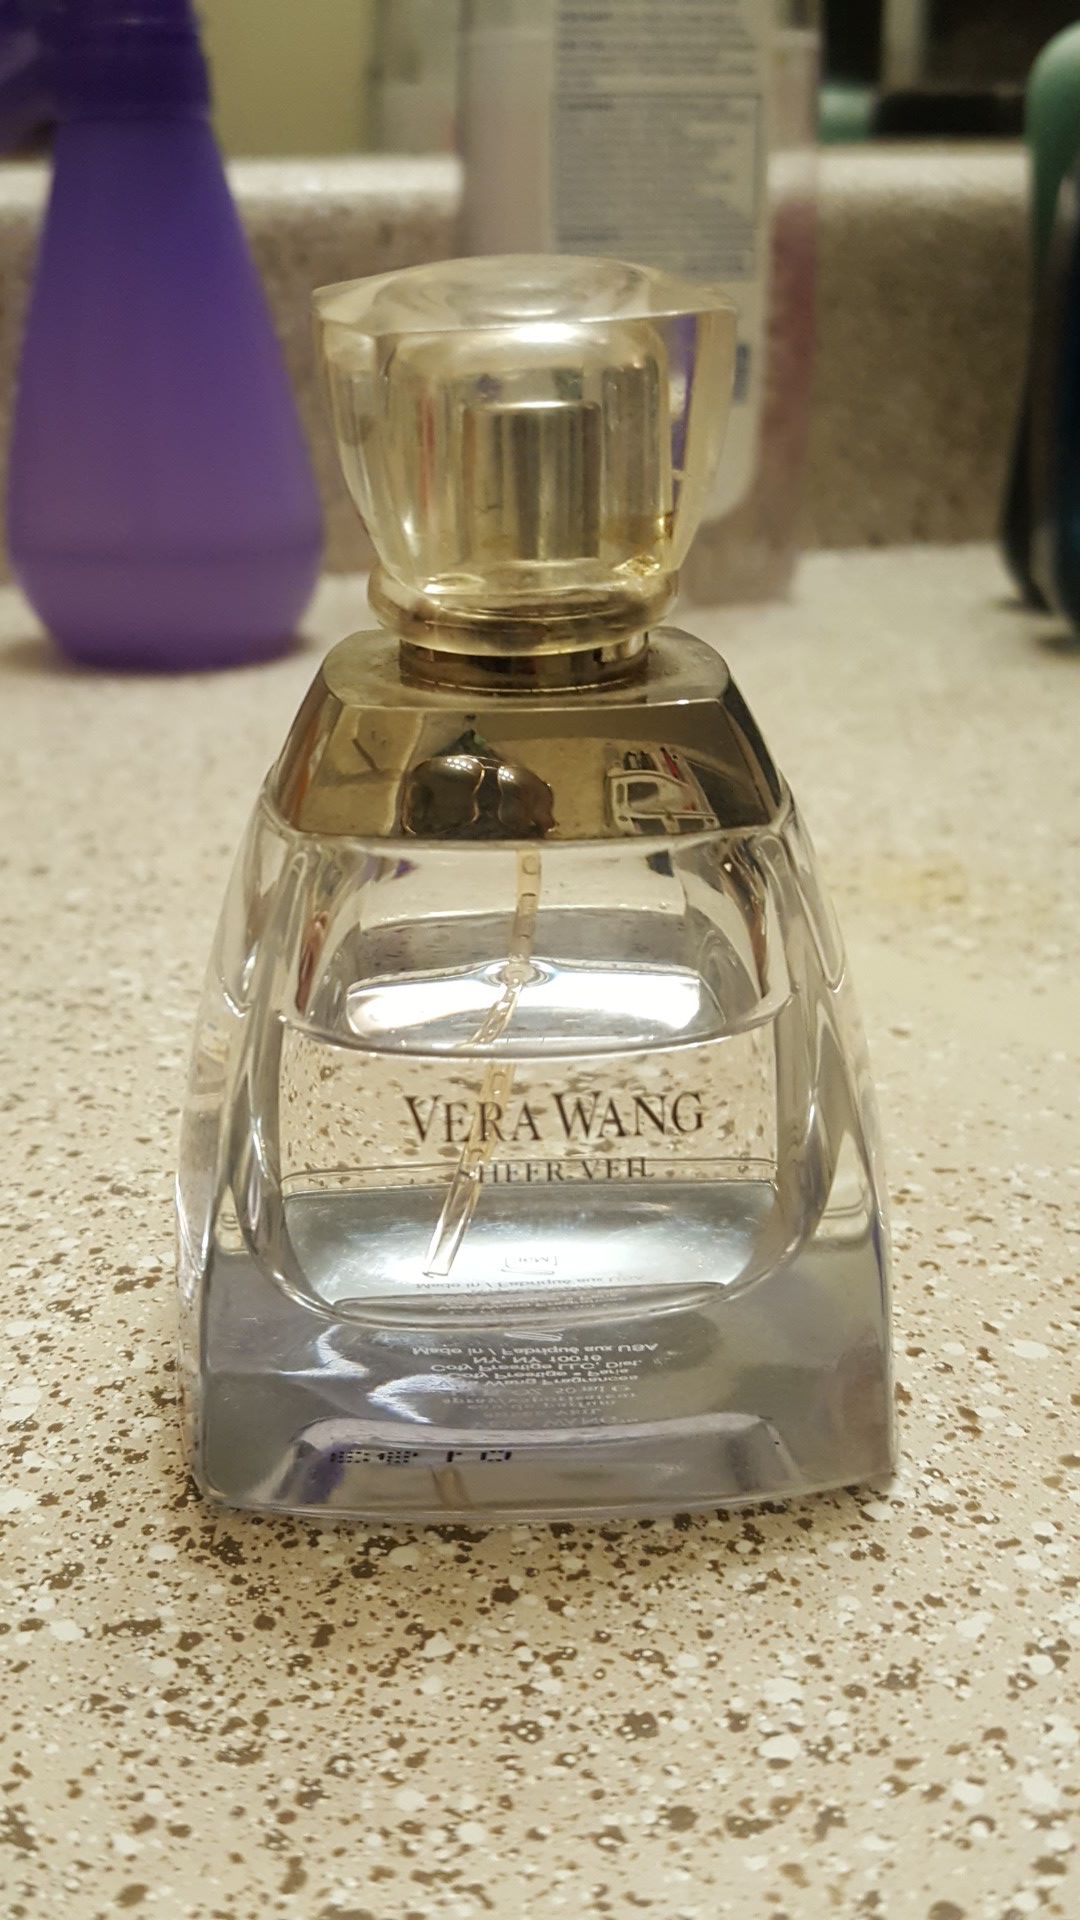 Vera Wang perfume